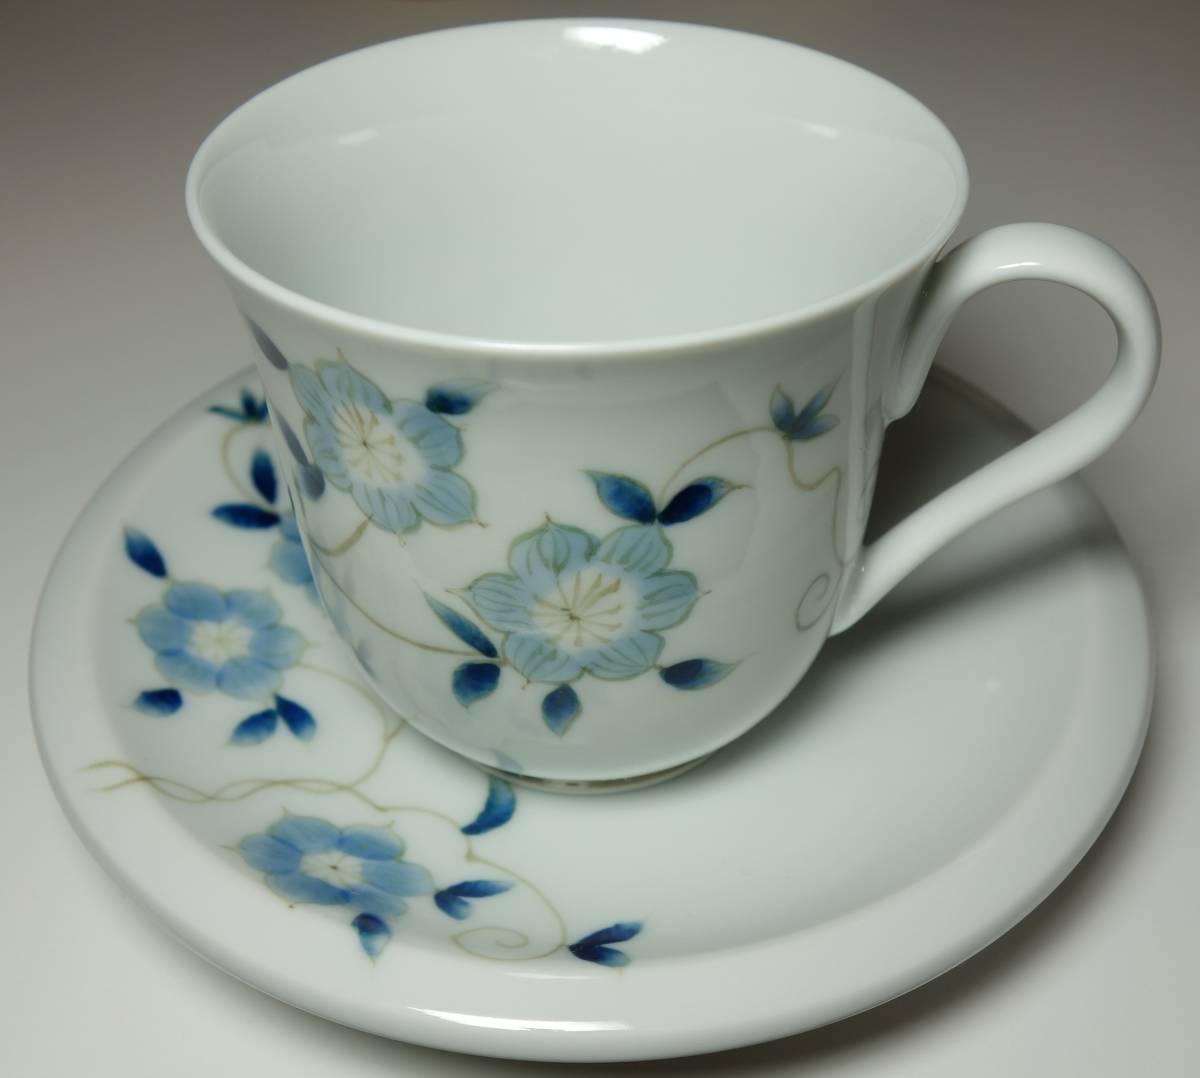 Handbemalte Blumenillustration der Heisei-Zeit, Kaffeetasse und Untertasse, seltene Hand, japanische Keramik, Keramik im Allgemeinen, farbiges Porzellan